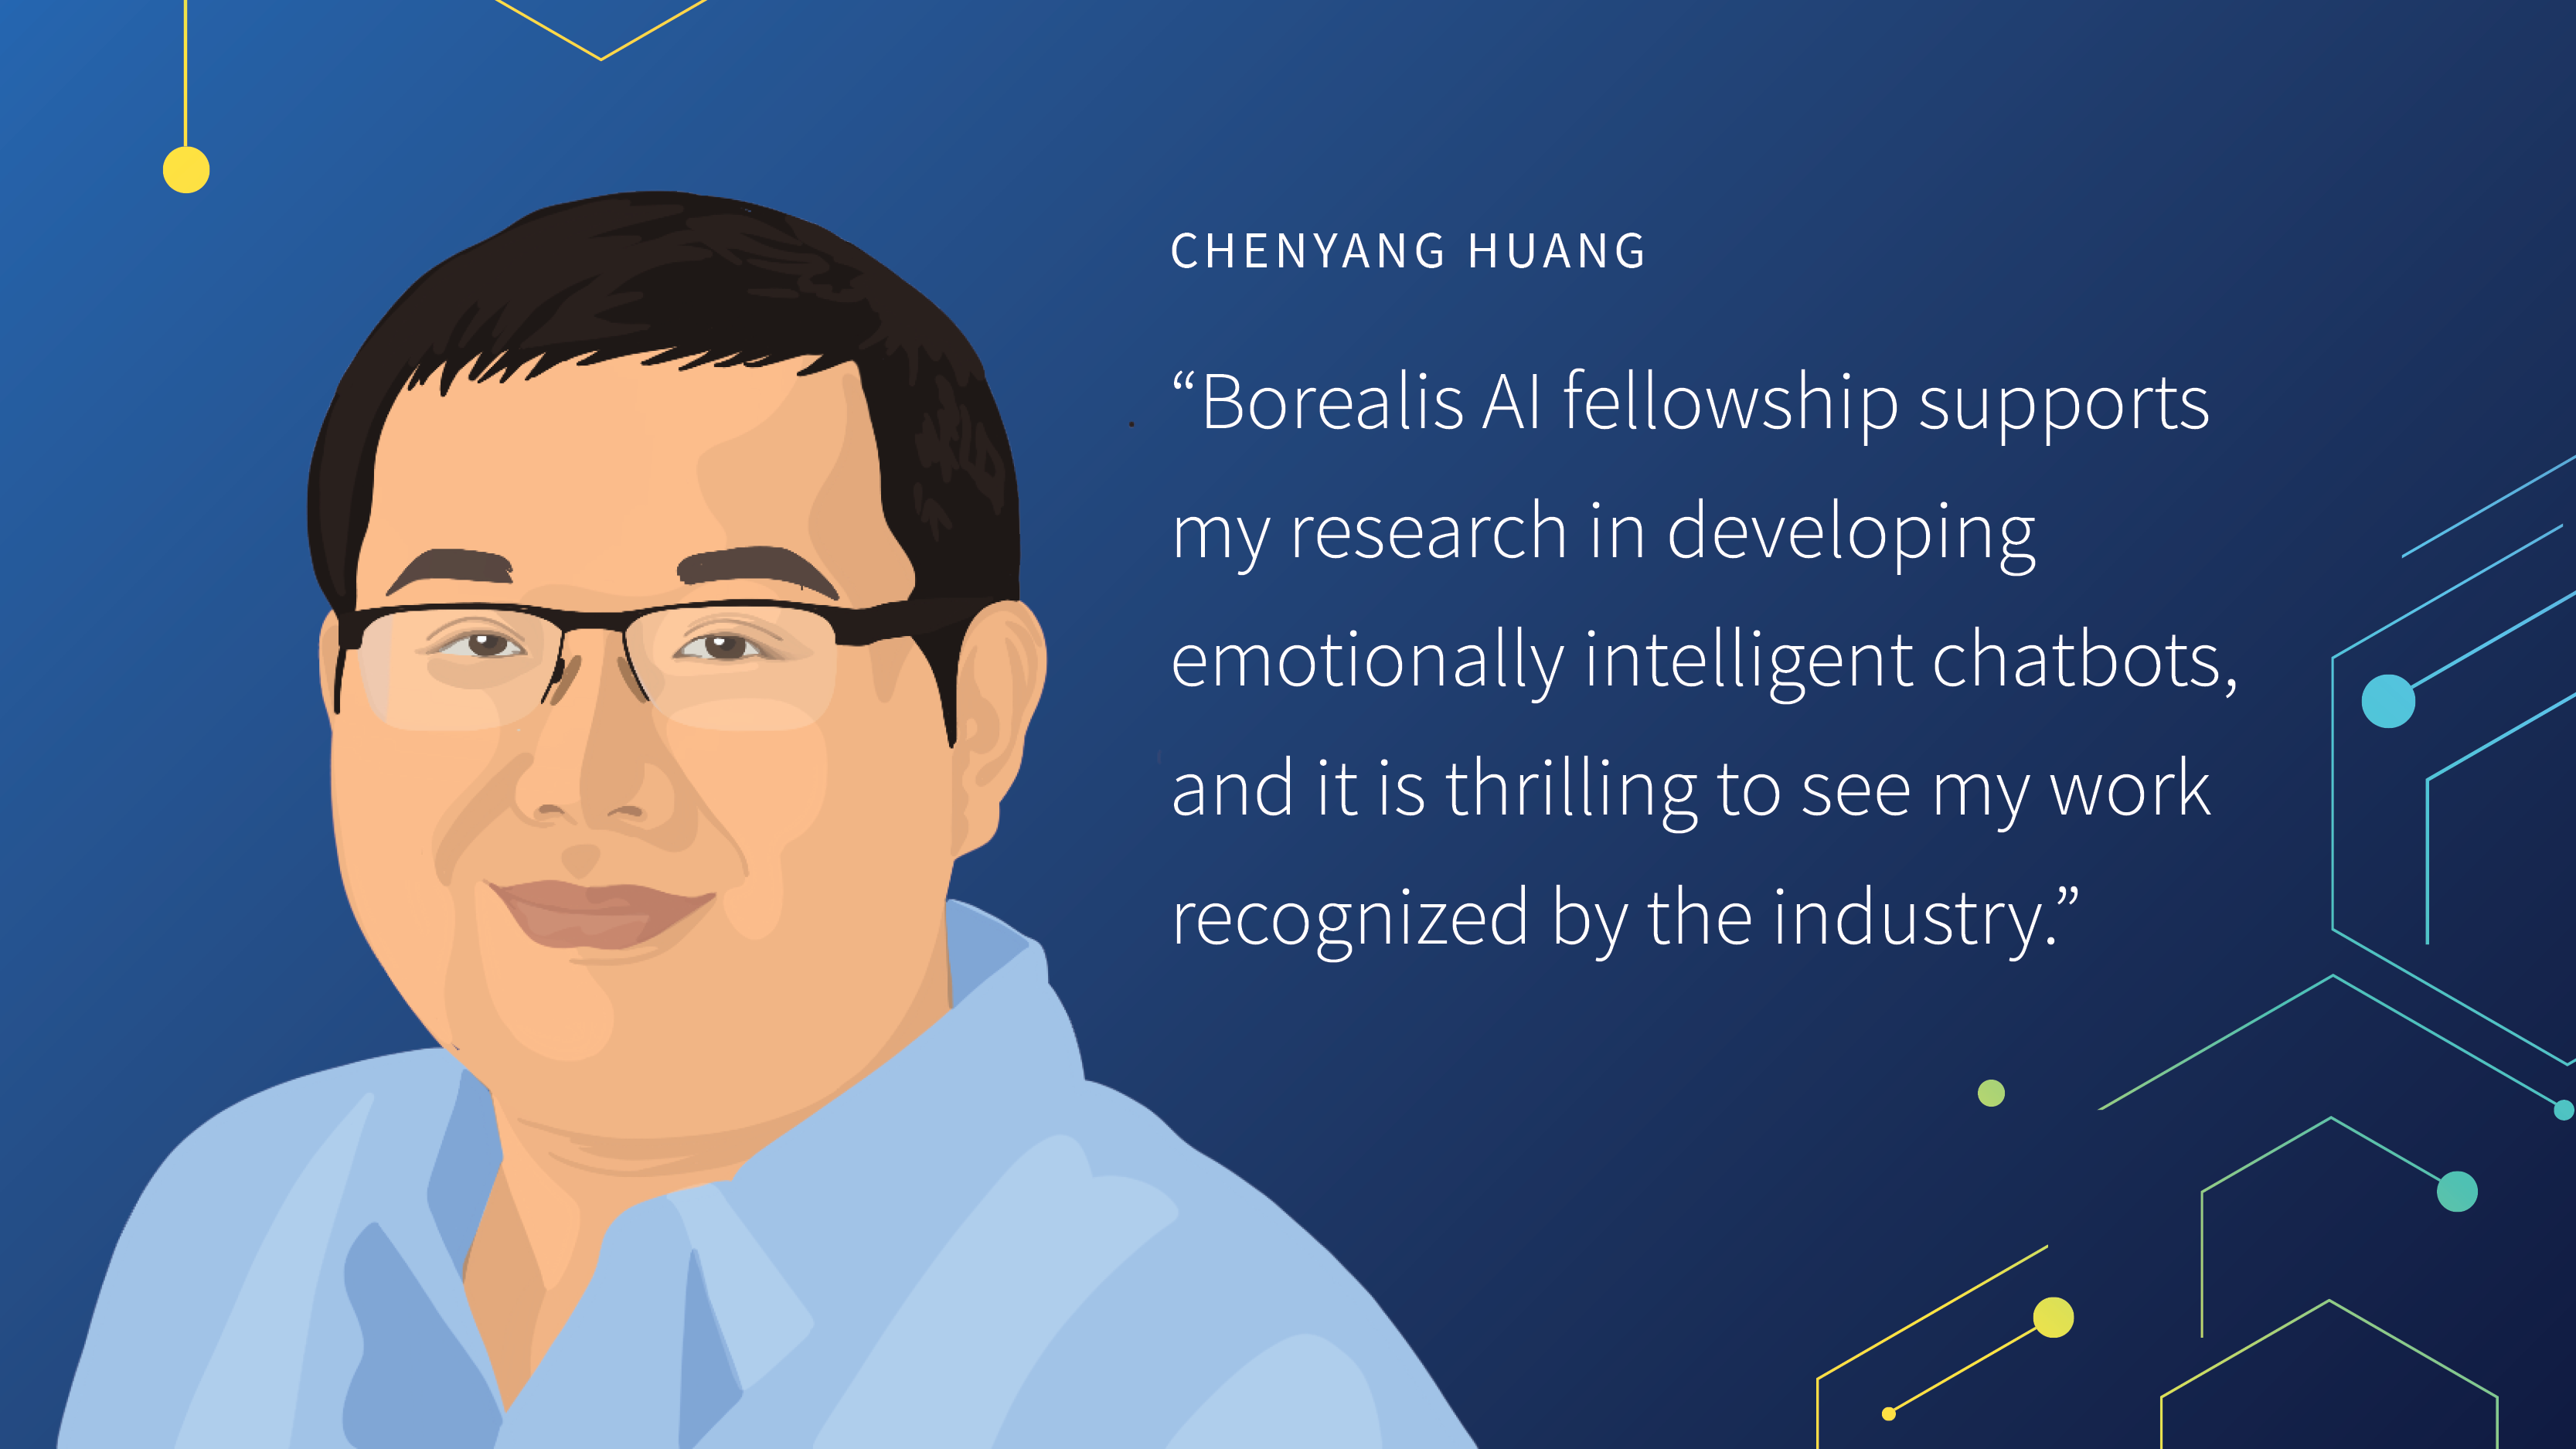 A quote from Chenyang Huang. Borealis AI fellowship